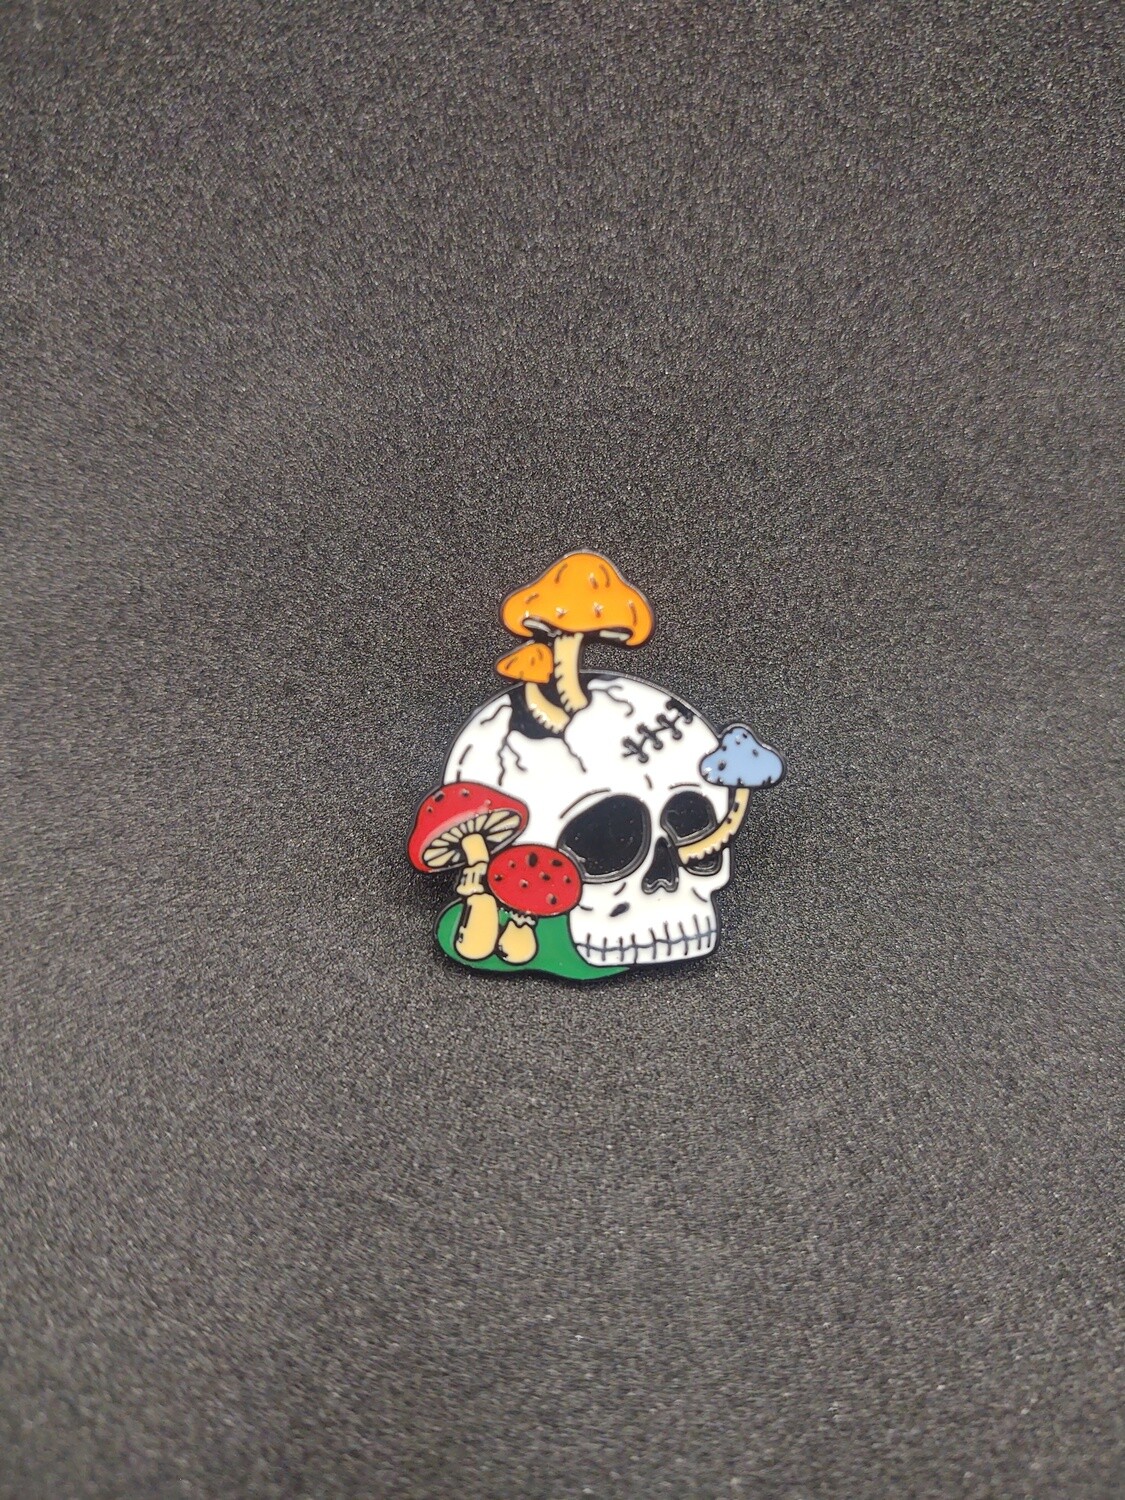 Mushroom Skull Pin